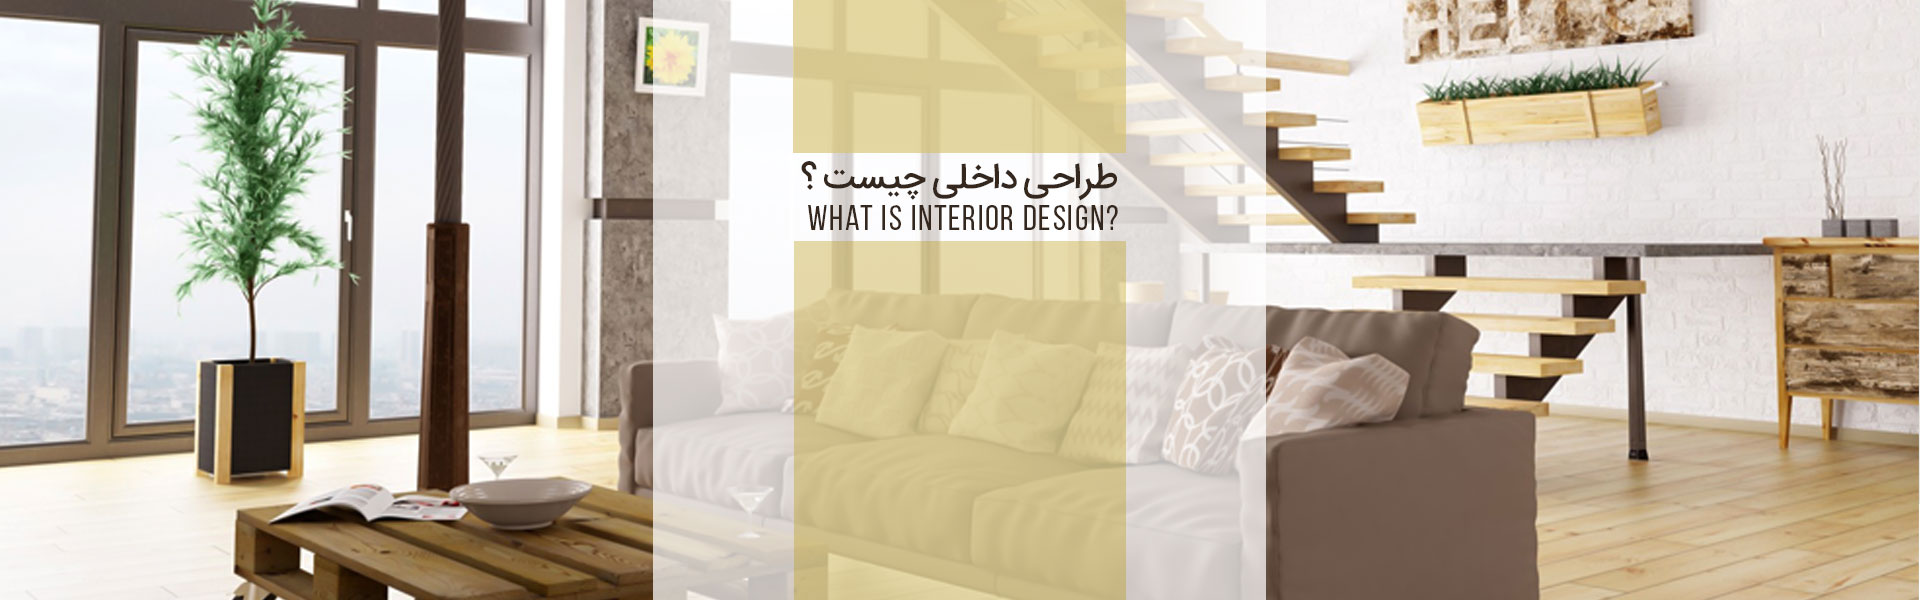 tarahi dakheili chist2 - طراحی داخلی چیست ؟